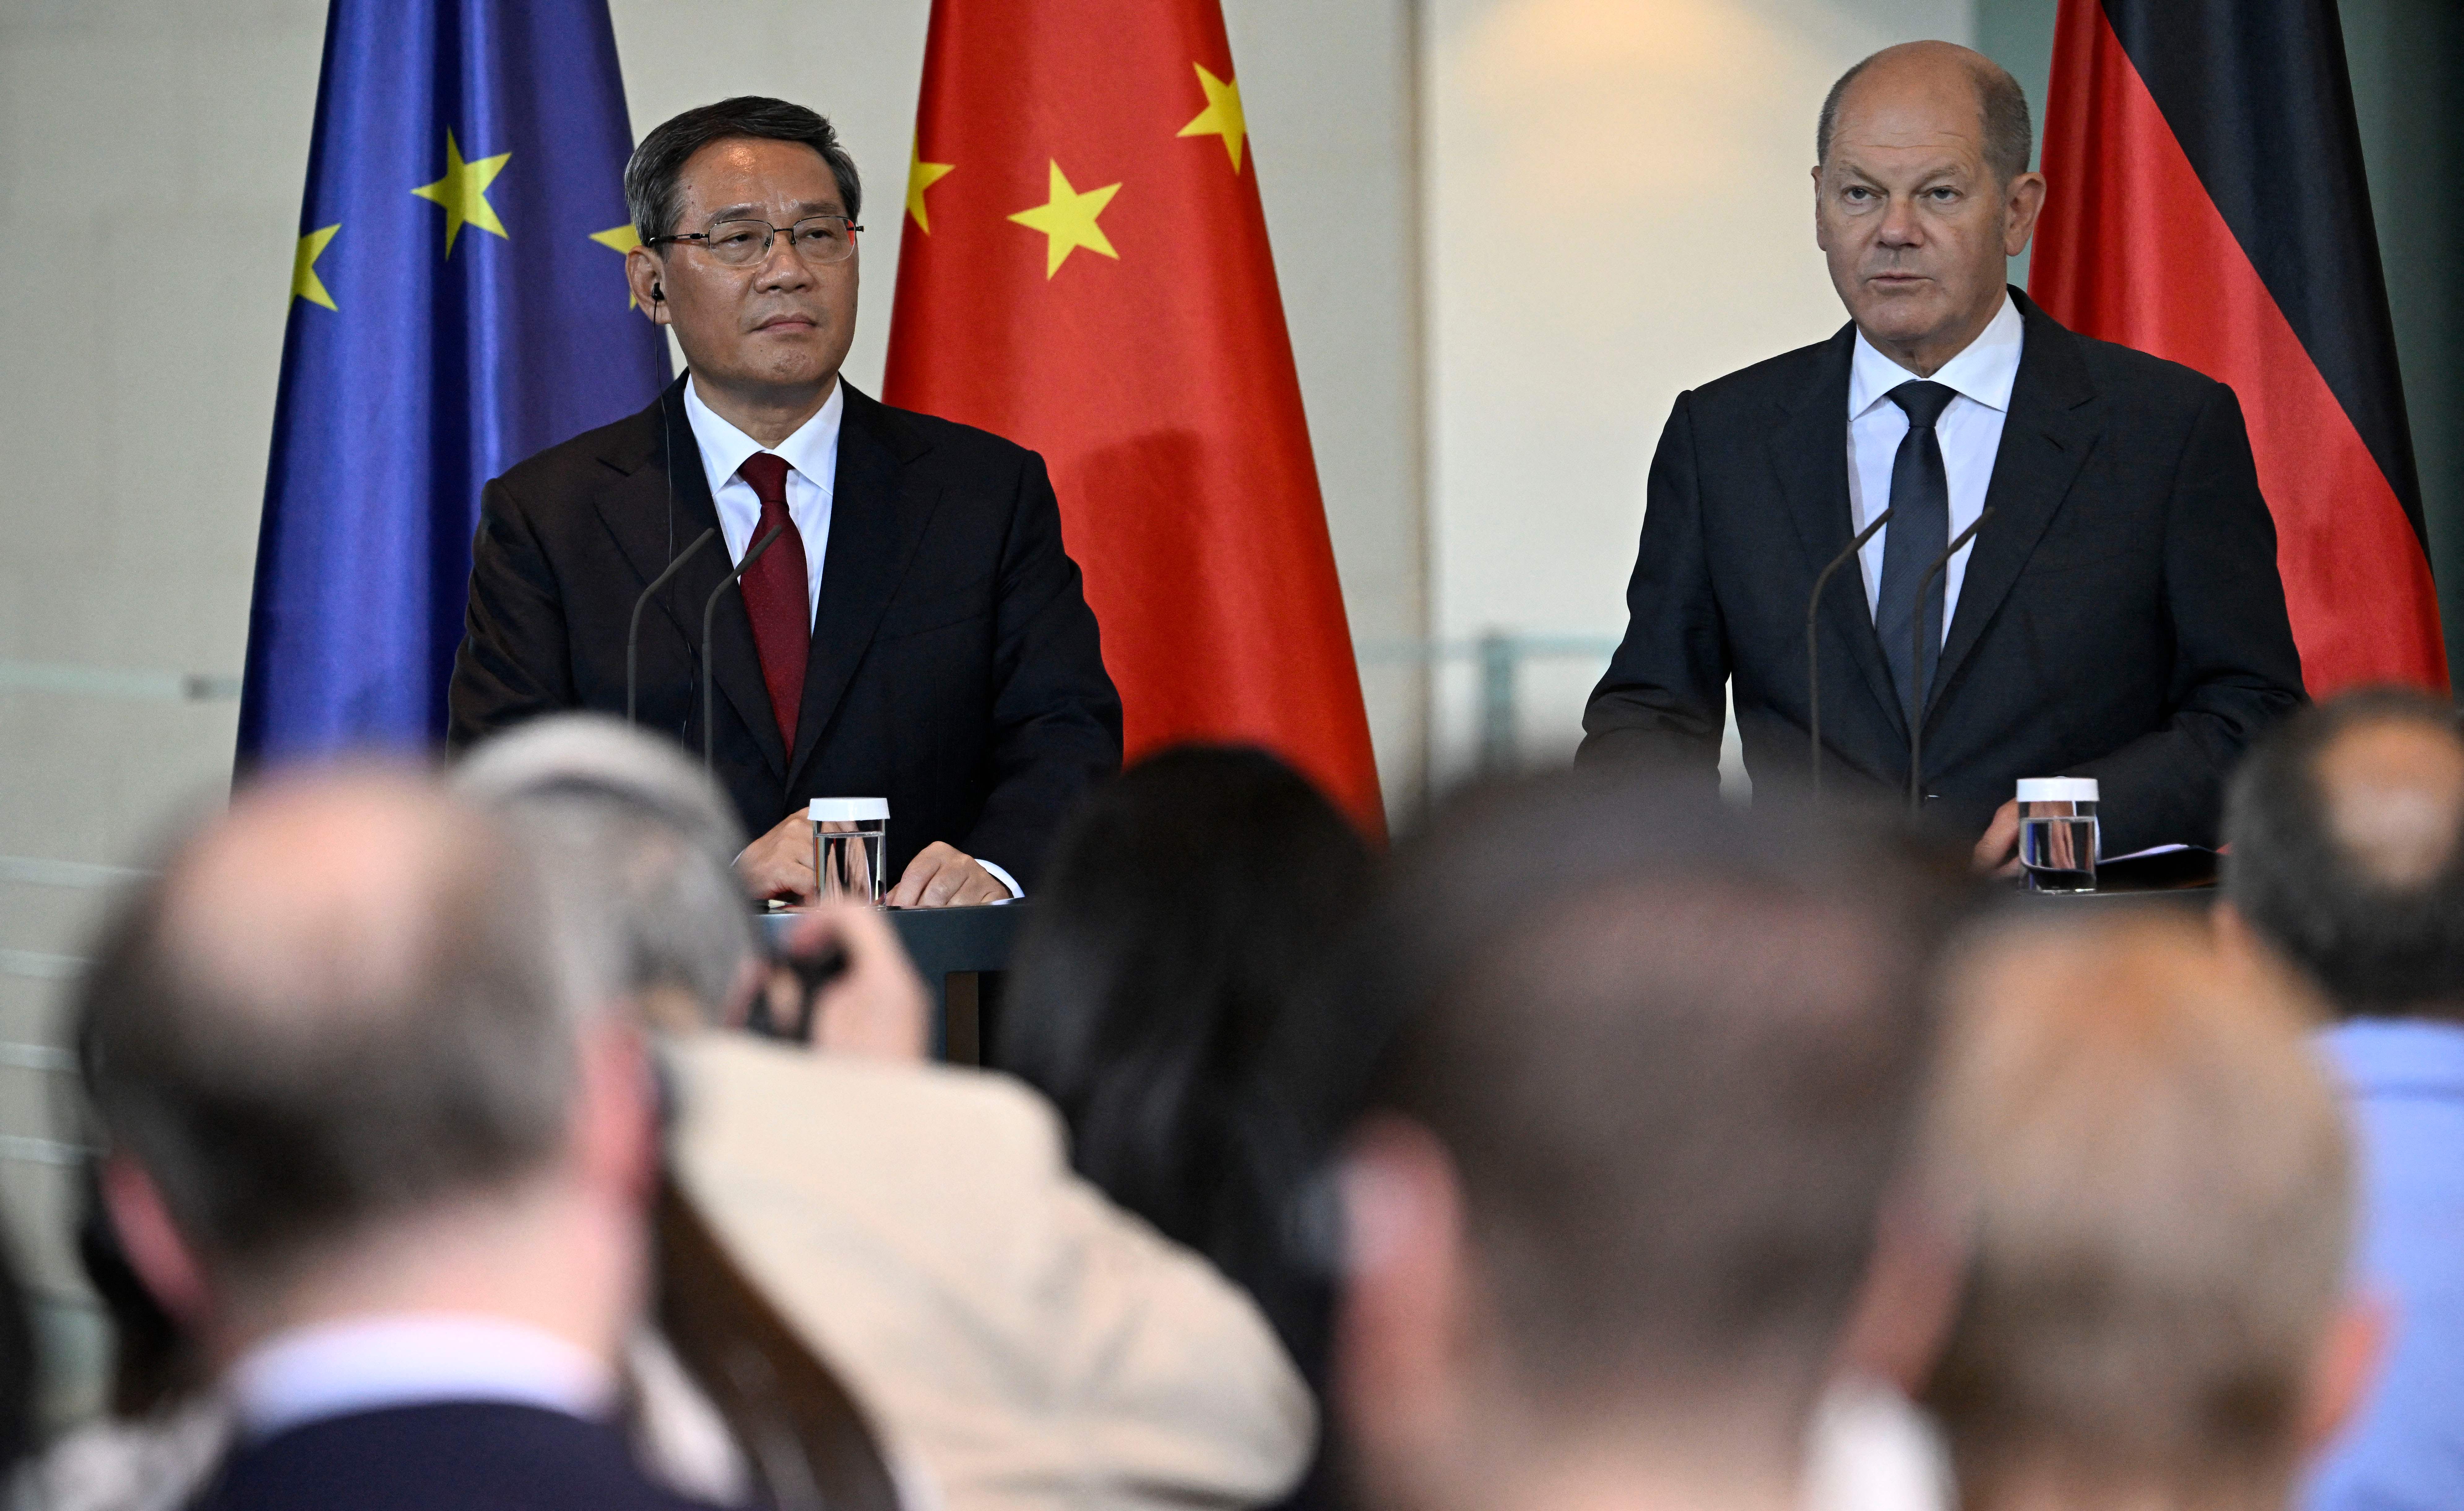 Германия призывает компании «избавиться от рисков» со стороны Китая и подчеркивает, что не стремится к отделению